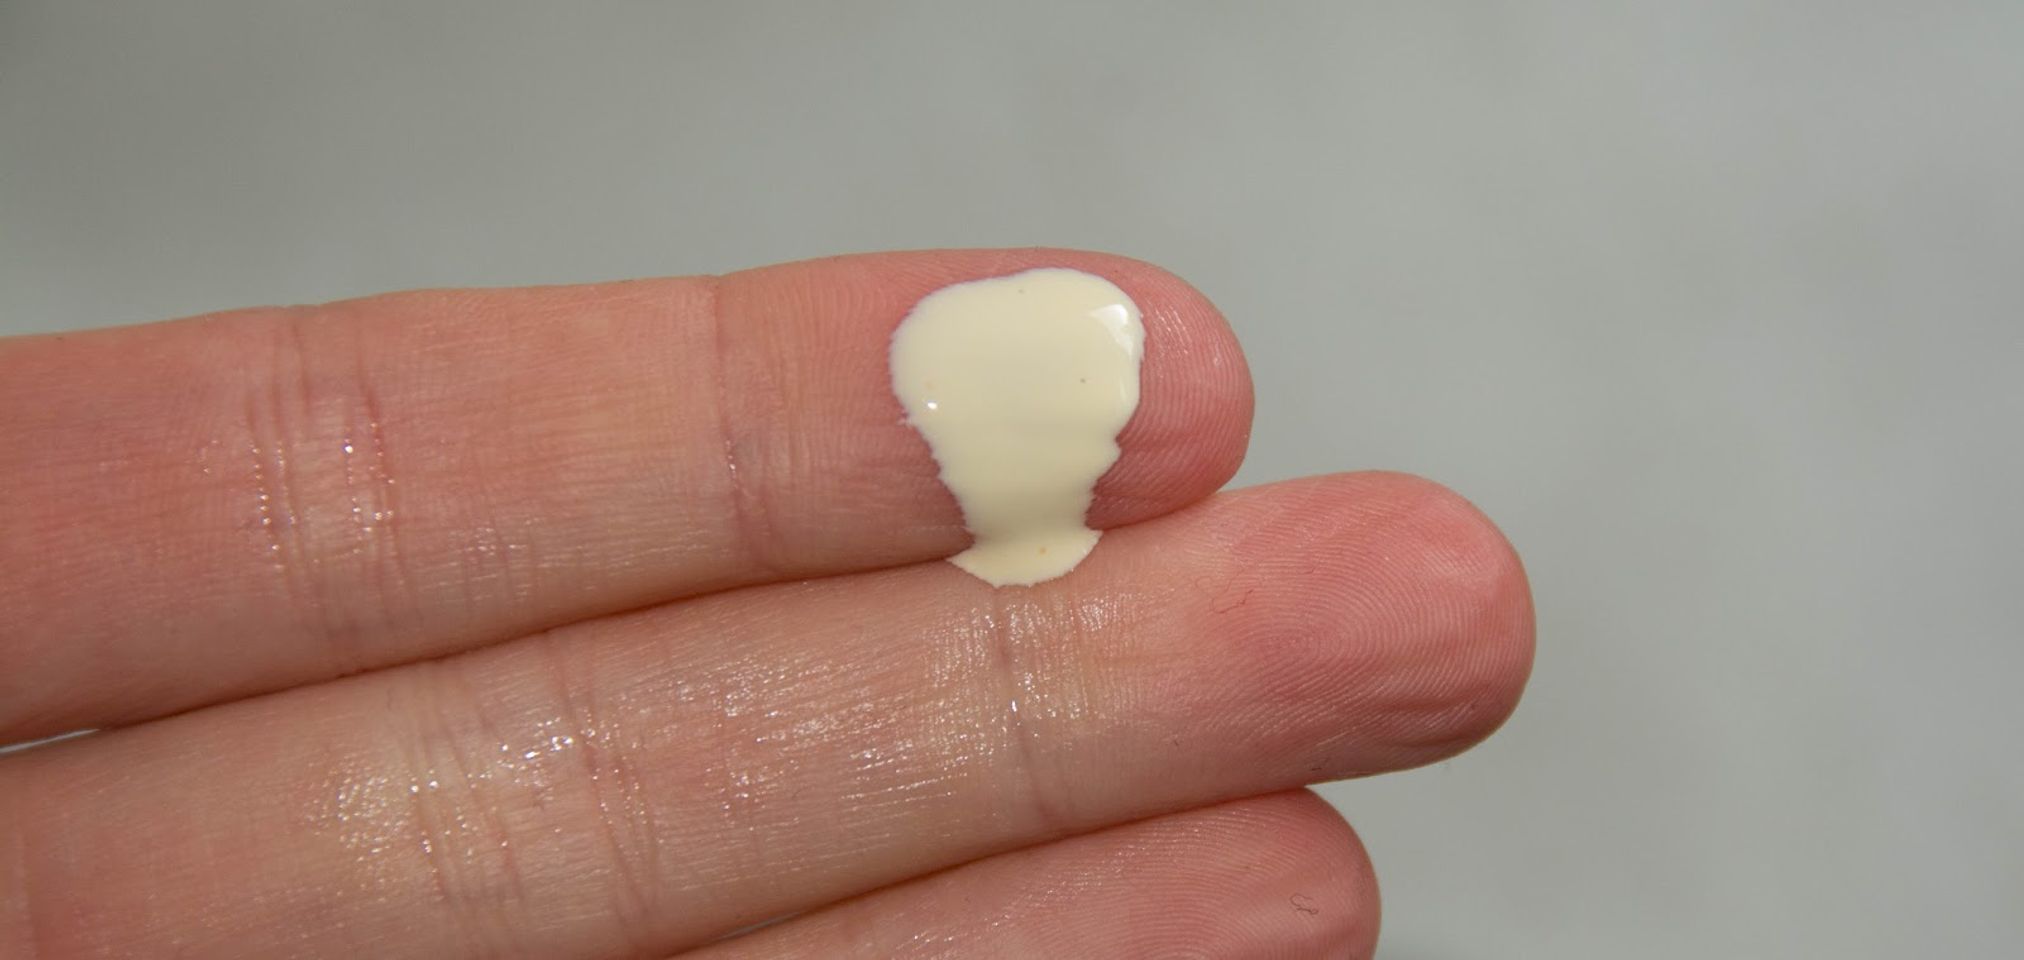 Kem chống nắng Bioderma Photoderm Nude Touch SPF50+ là loại kem chống nắng thuần vật lí với chất kem khá lỏng